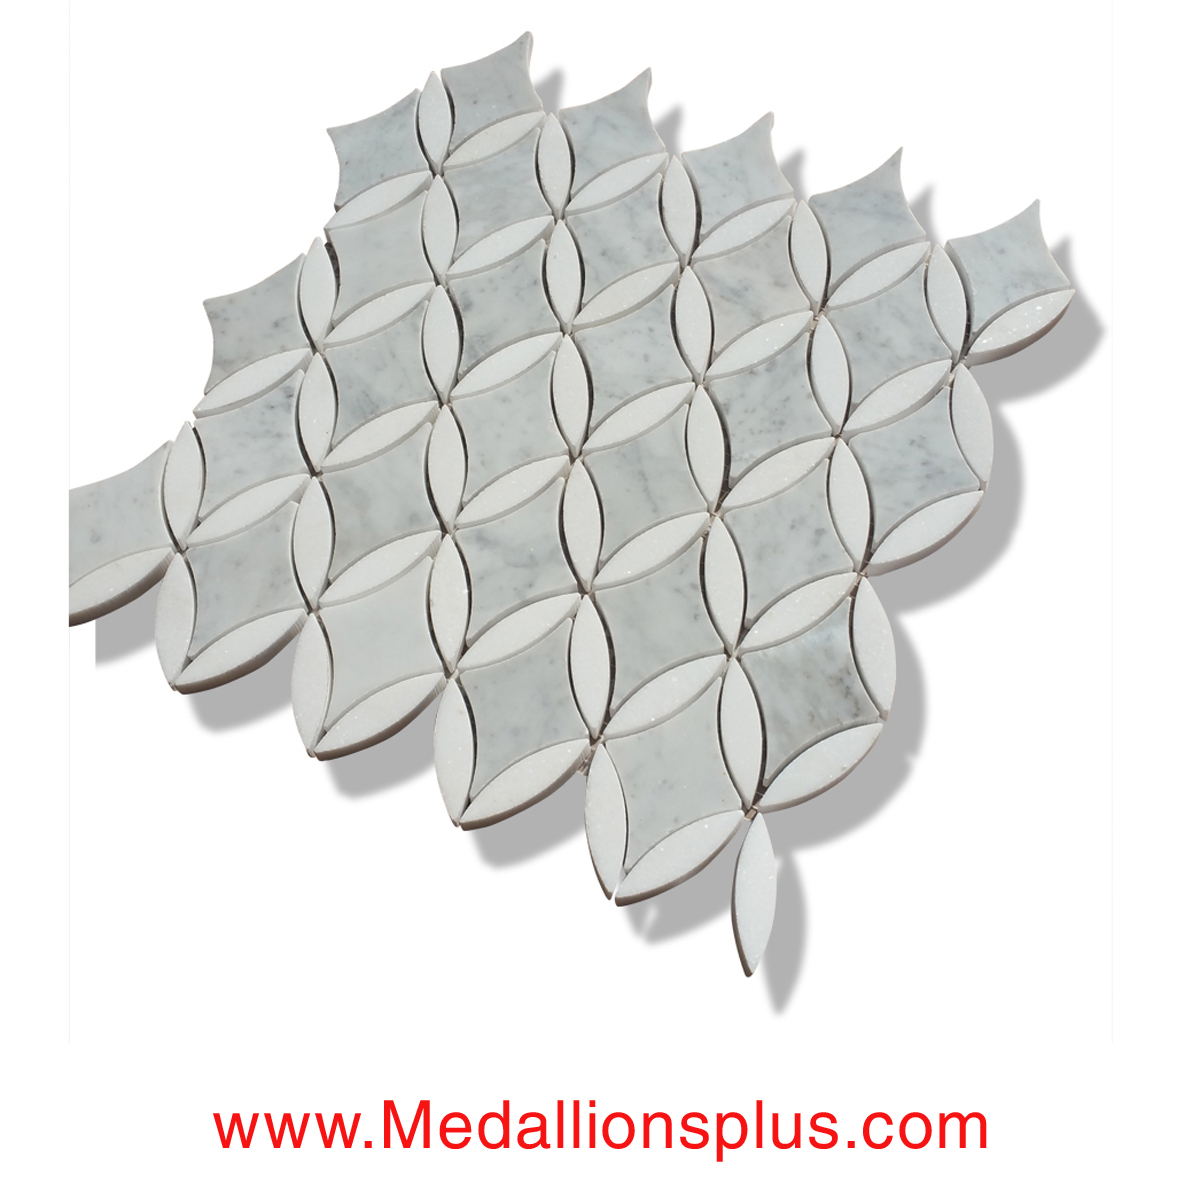 Oval Diamond - Carrara & Thassos White Marble Polished Mosaic Tiles